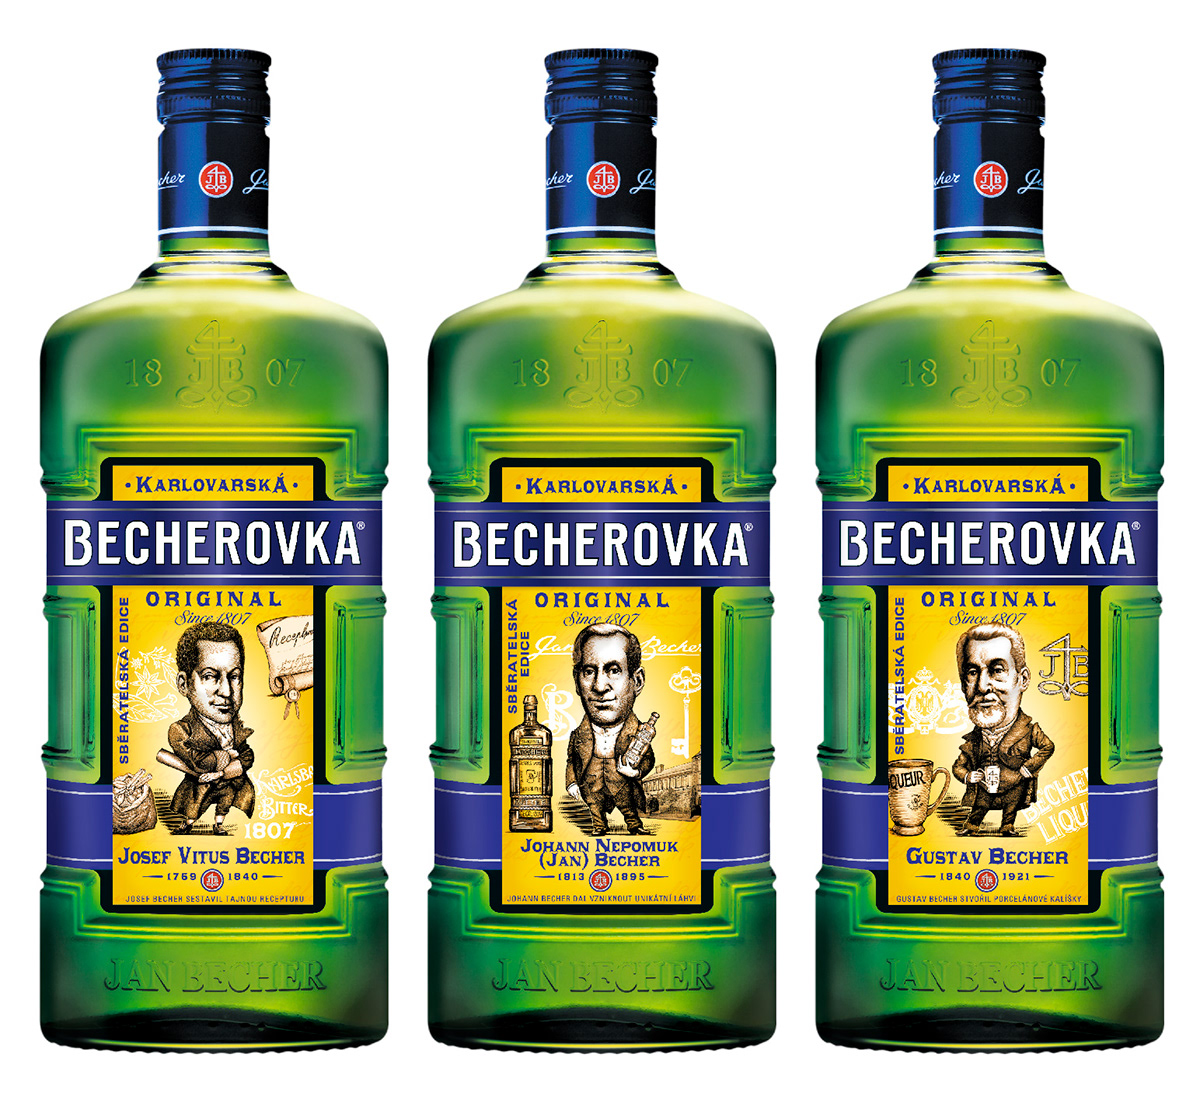 becherovka  czech republic pernod ricard Jan Becher limited edition